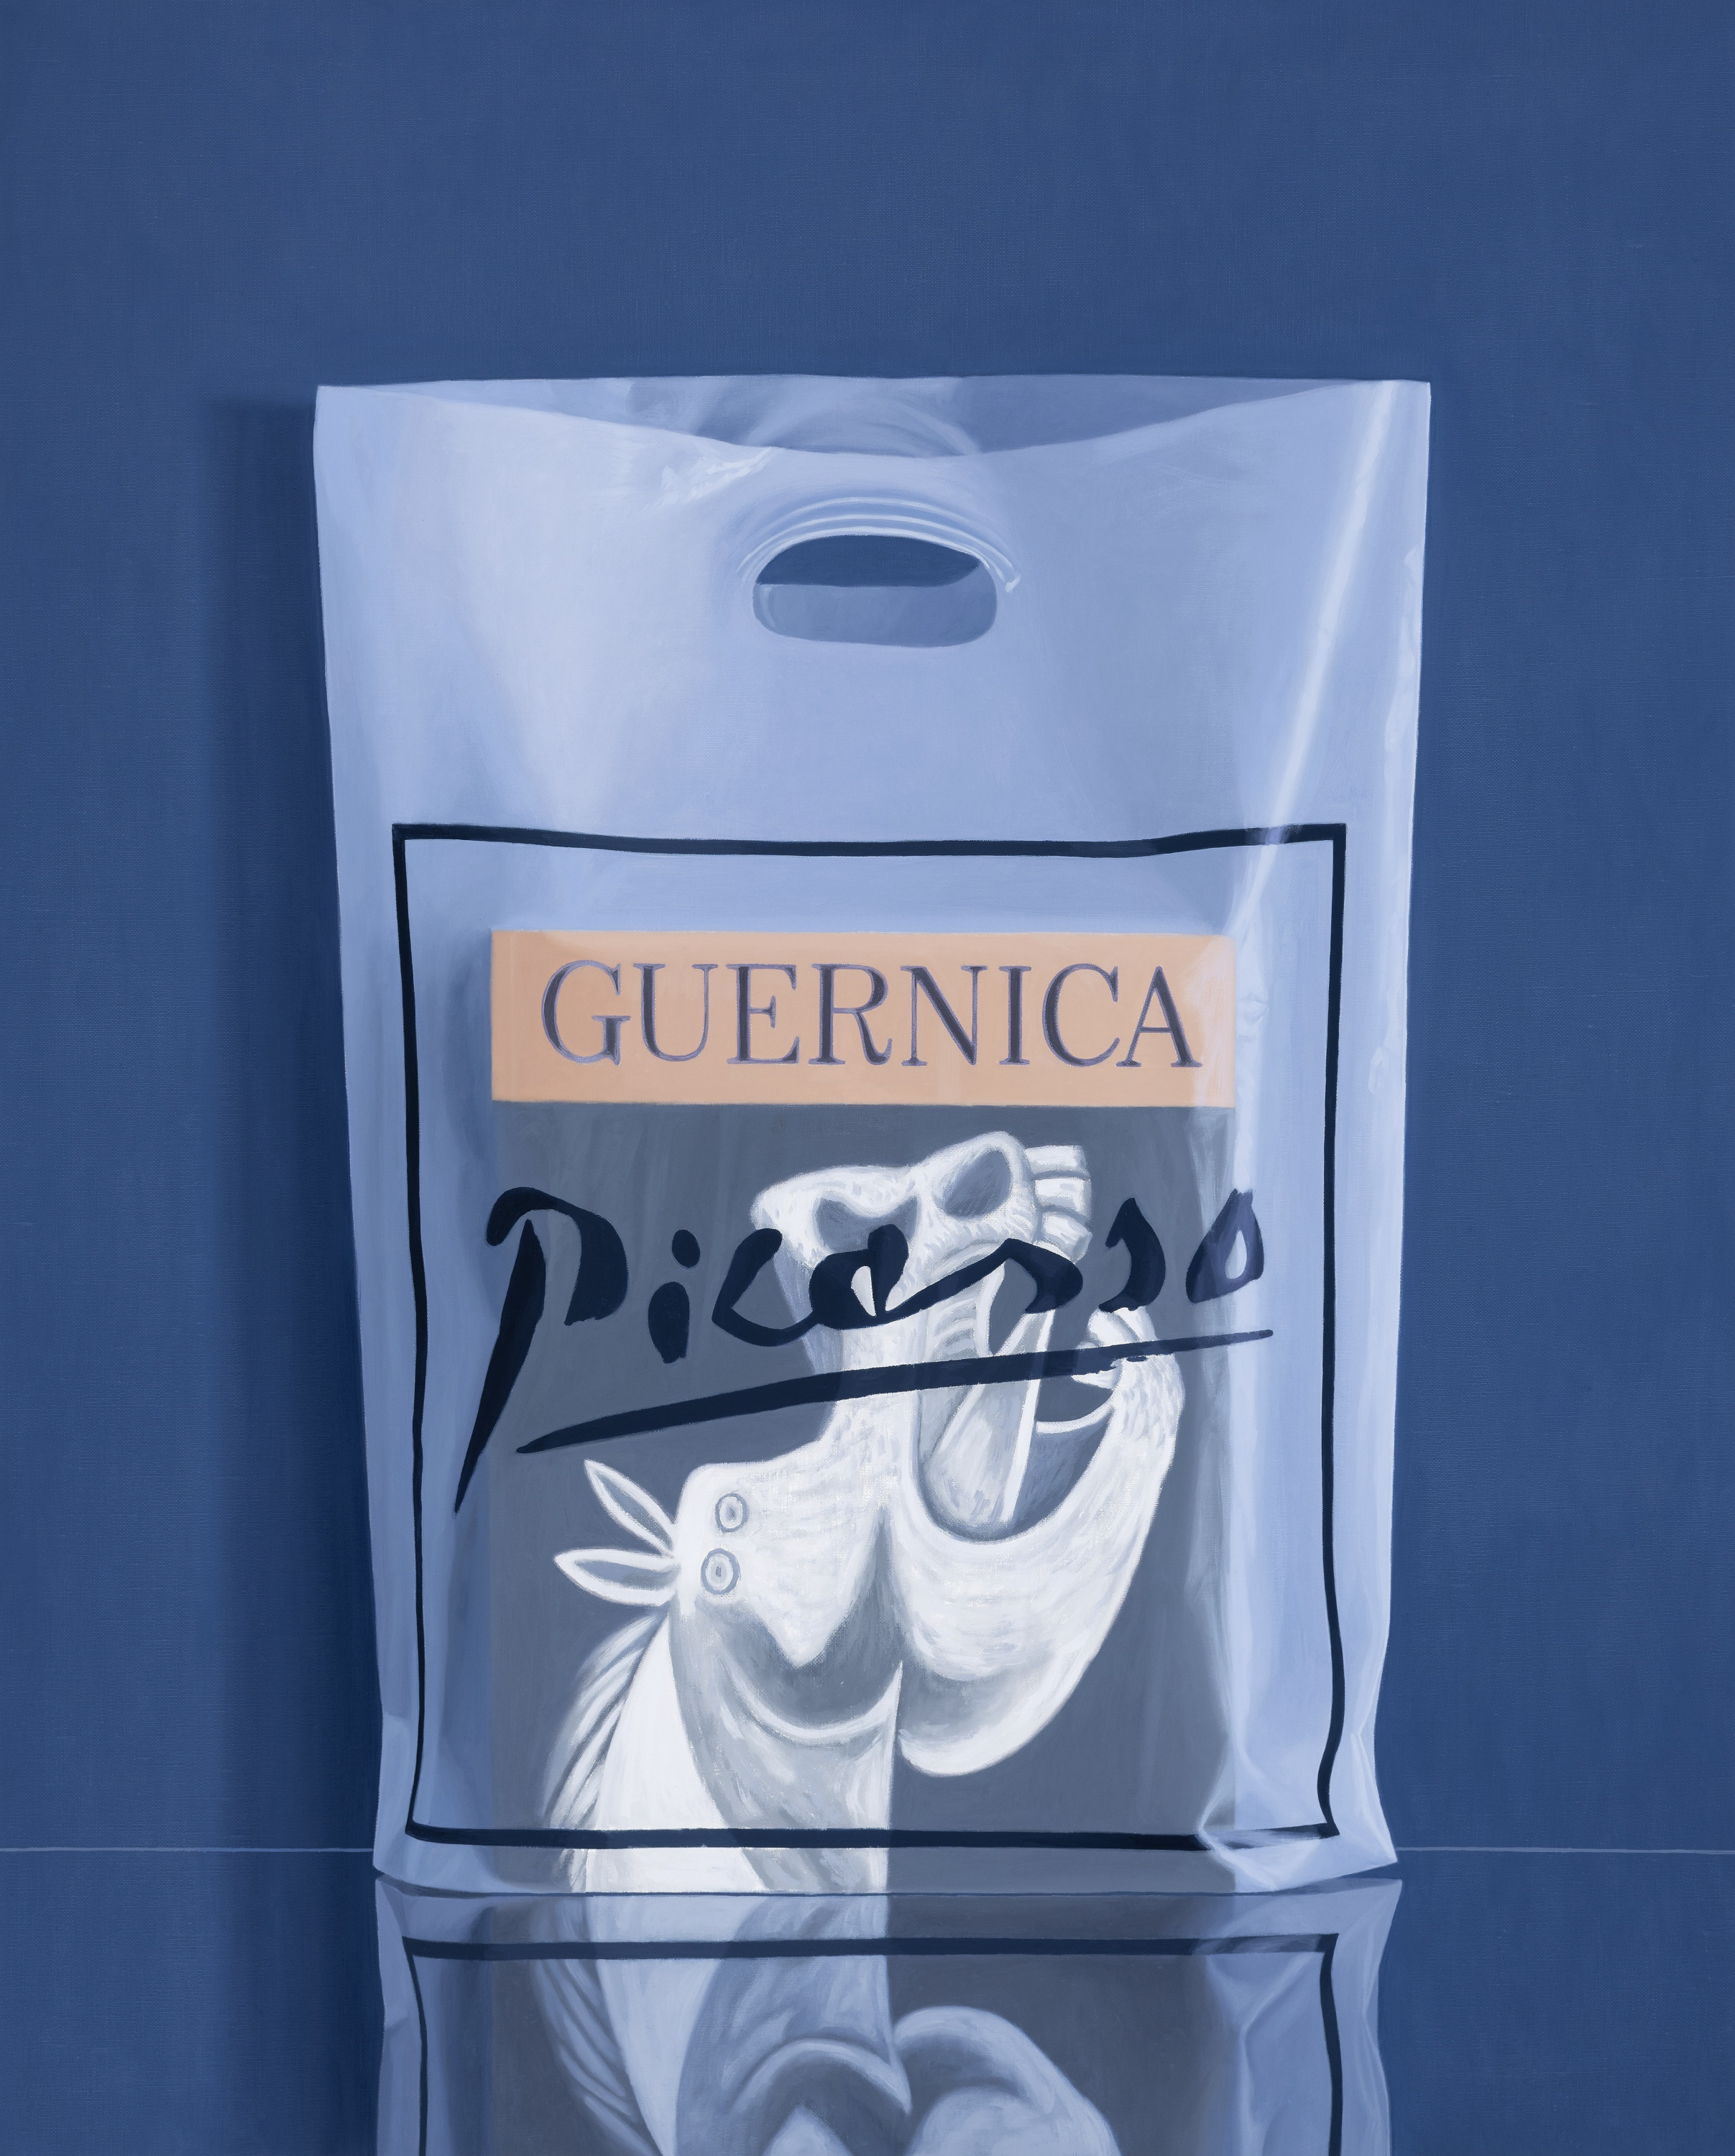 2023 Guernica Picasso